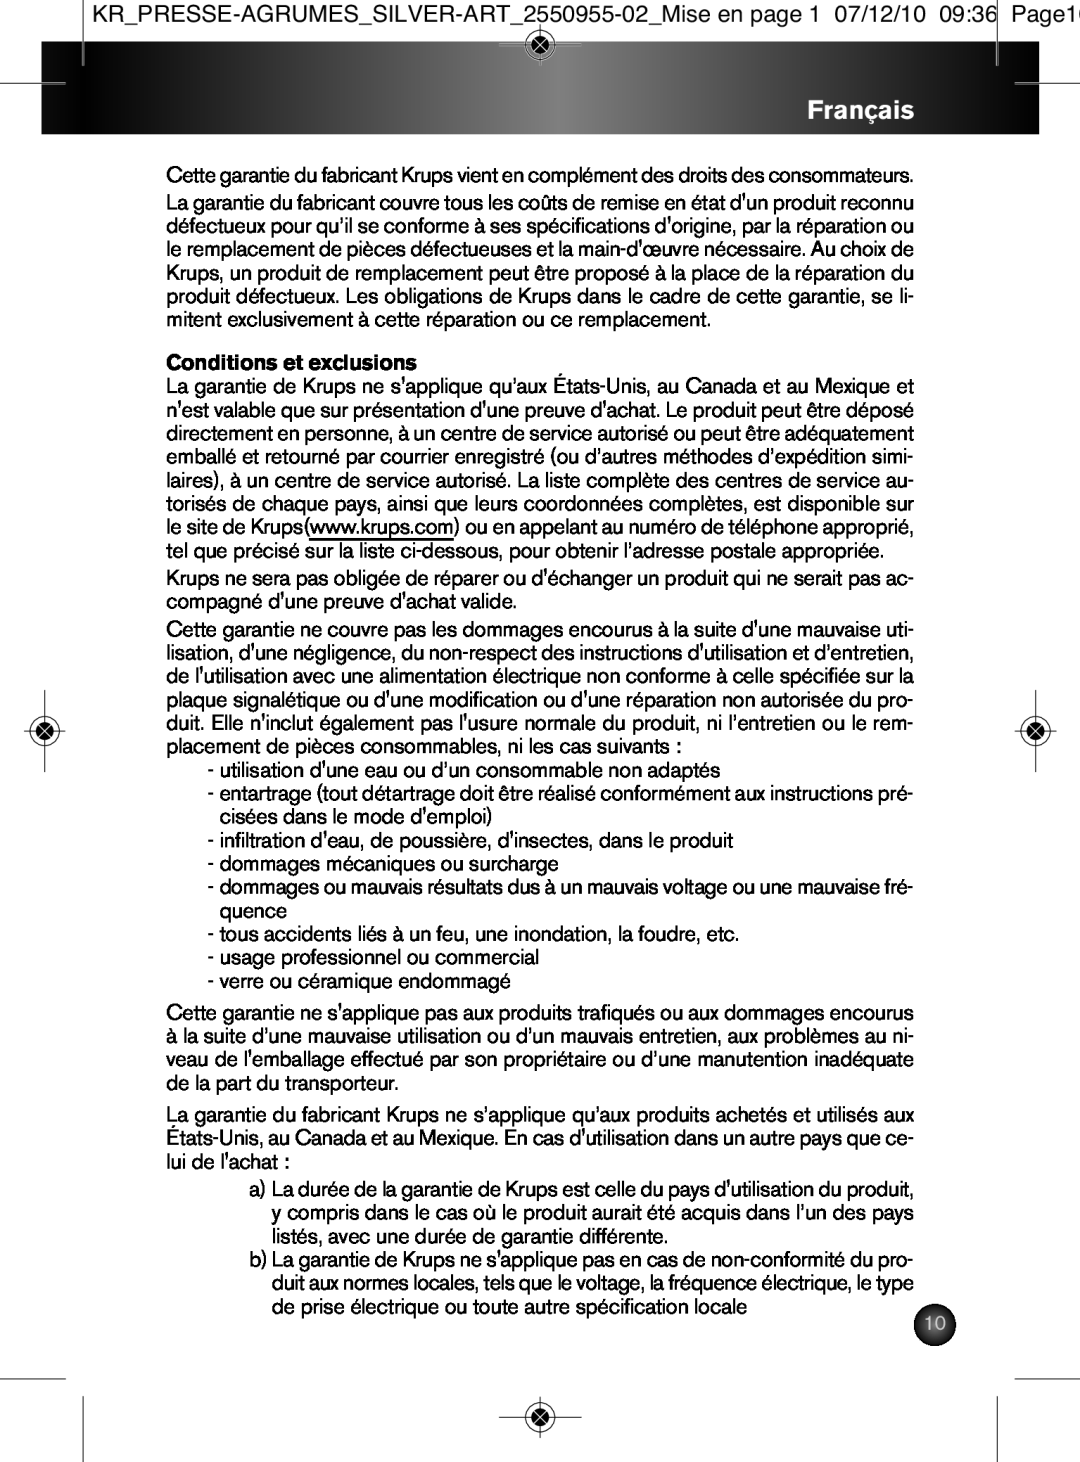 Krups 2550955-02 manual Français, Conditions et exclusions 